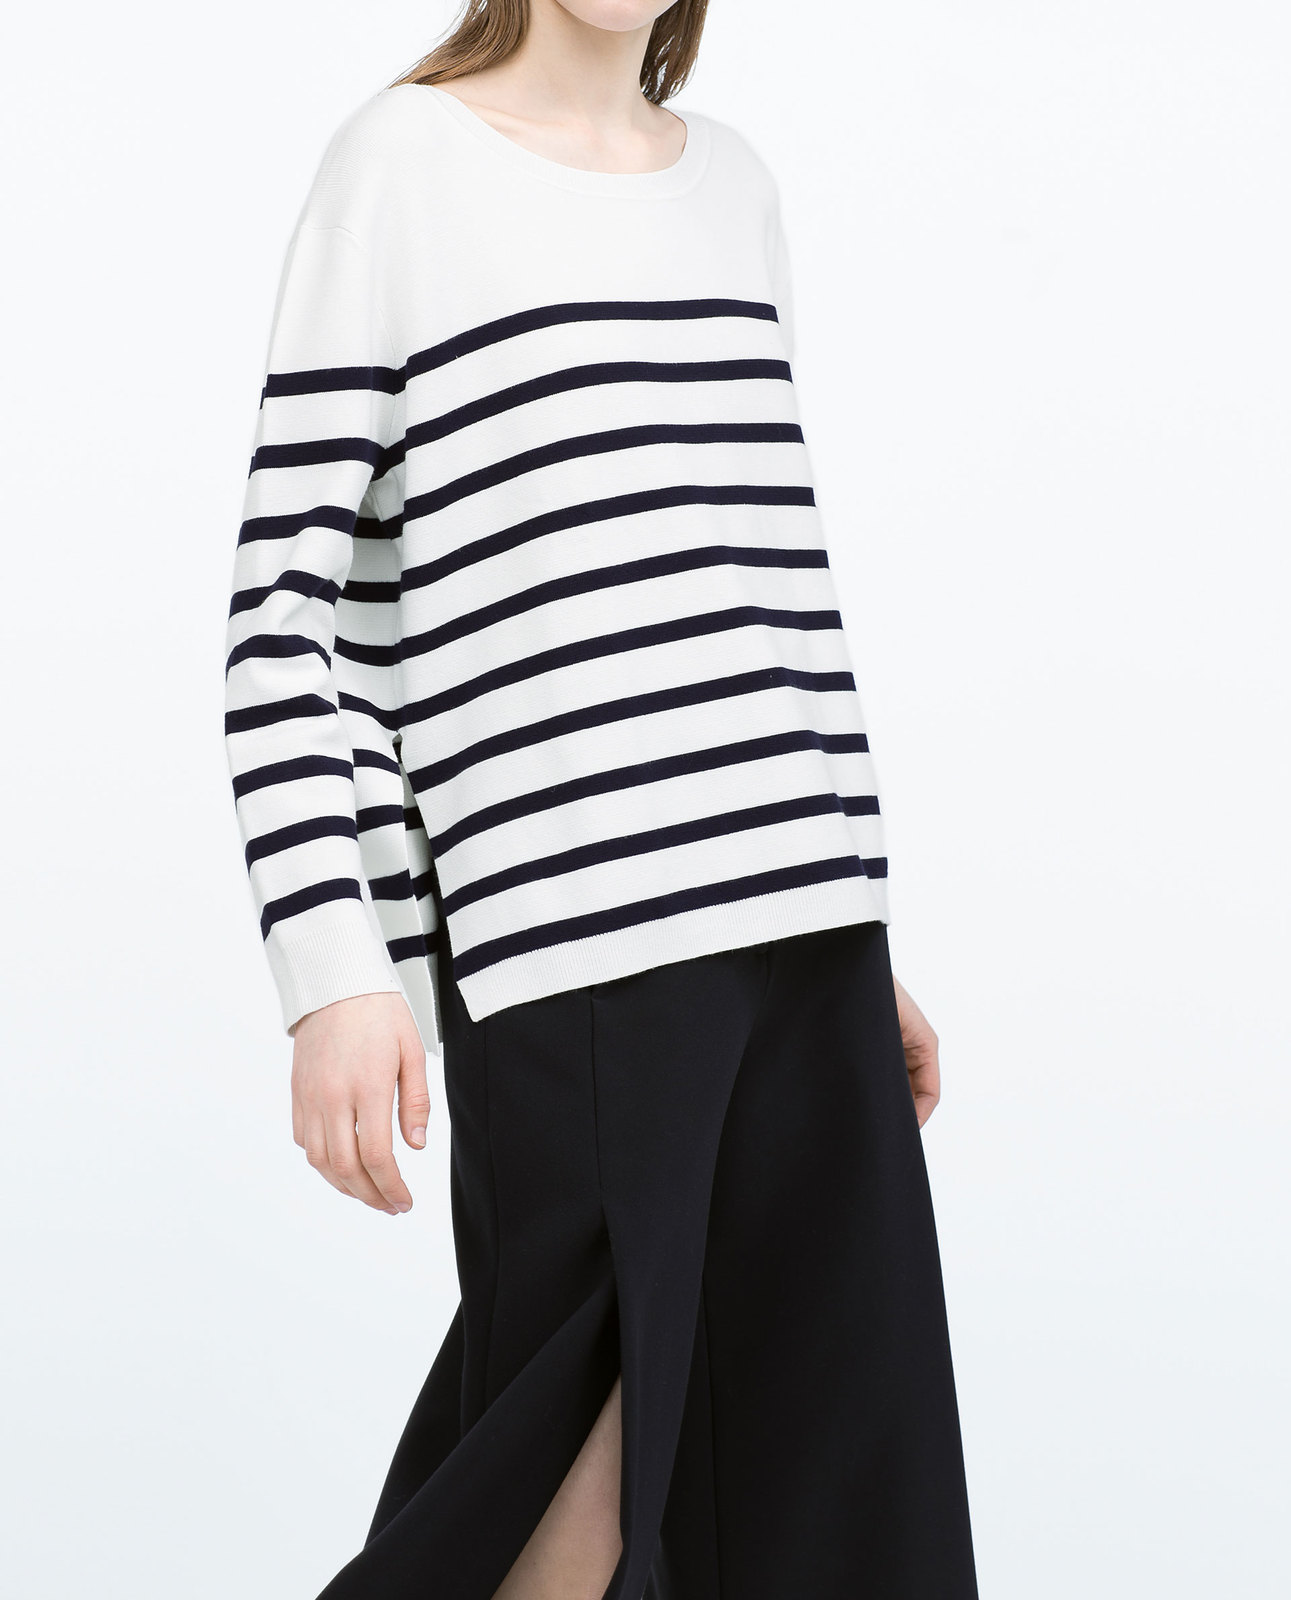 Zara tengerészcsíkos fekete-fehér pulóver 2015.02.23 #74920 fotója